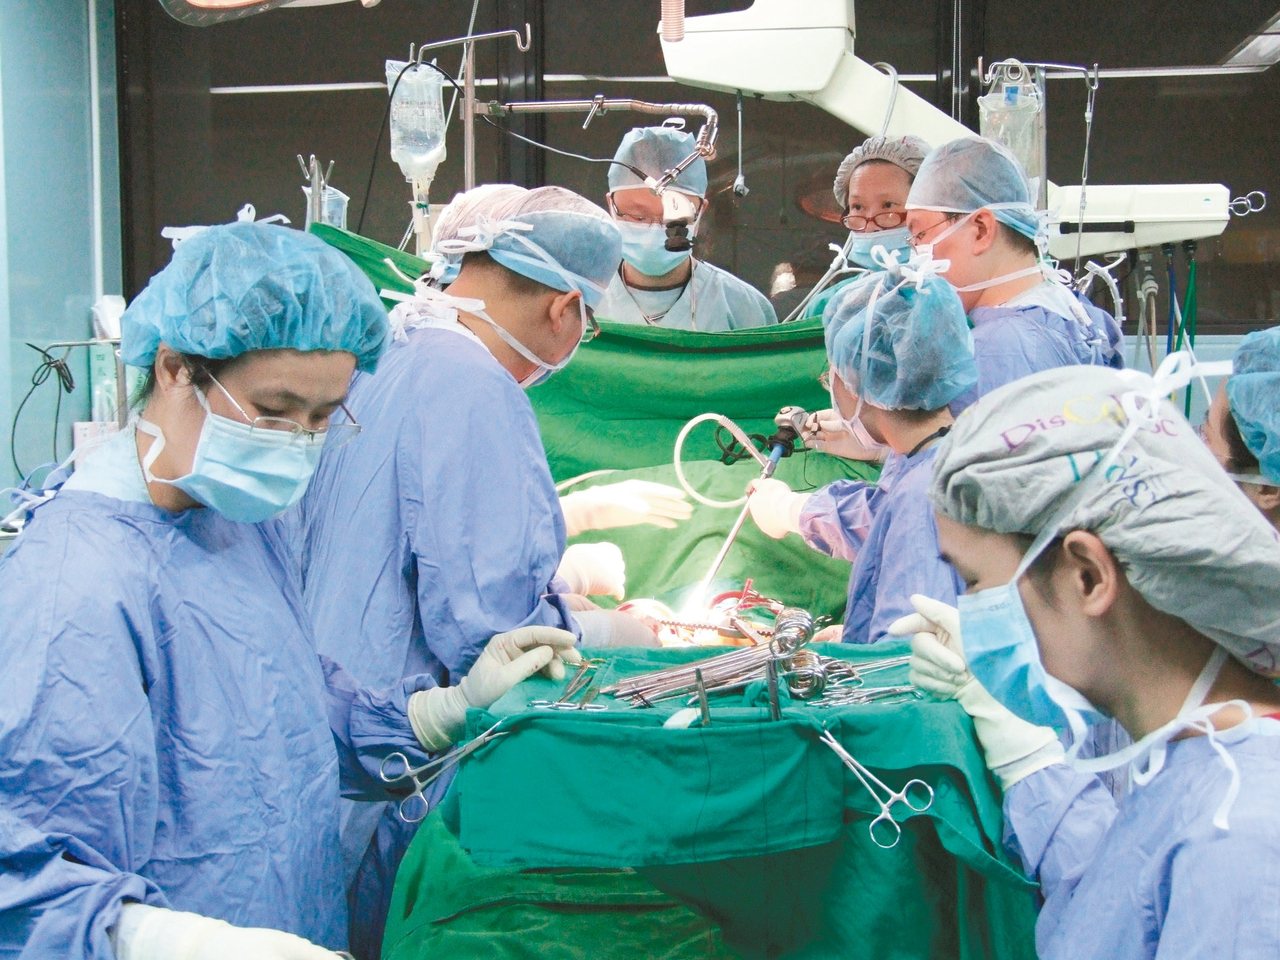 國內移植手術成績具國際水準。圖為振興醫院心臟移植團隊手術畫面。